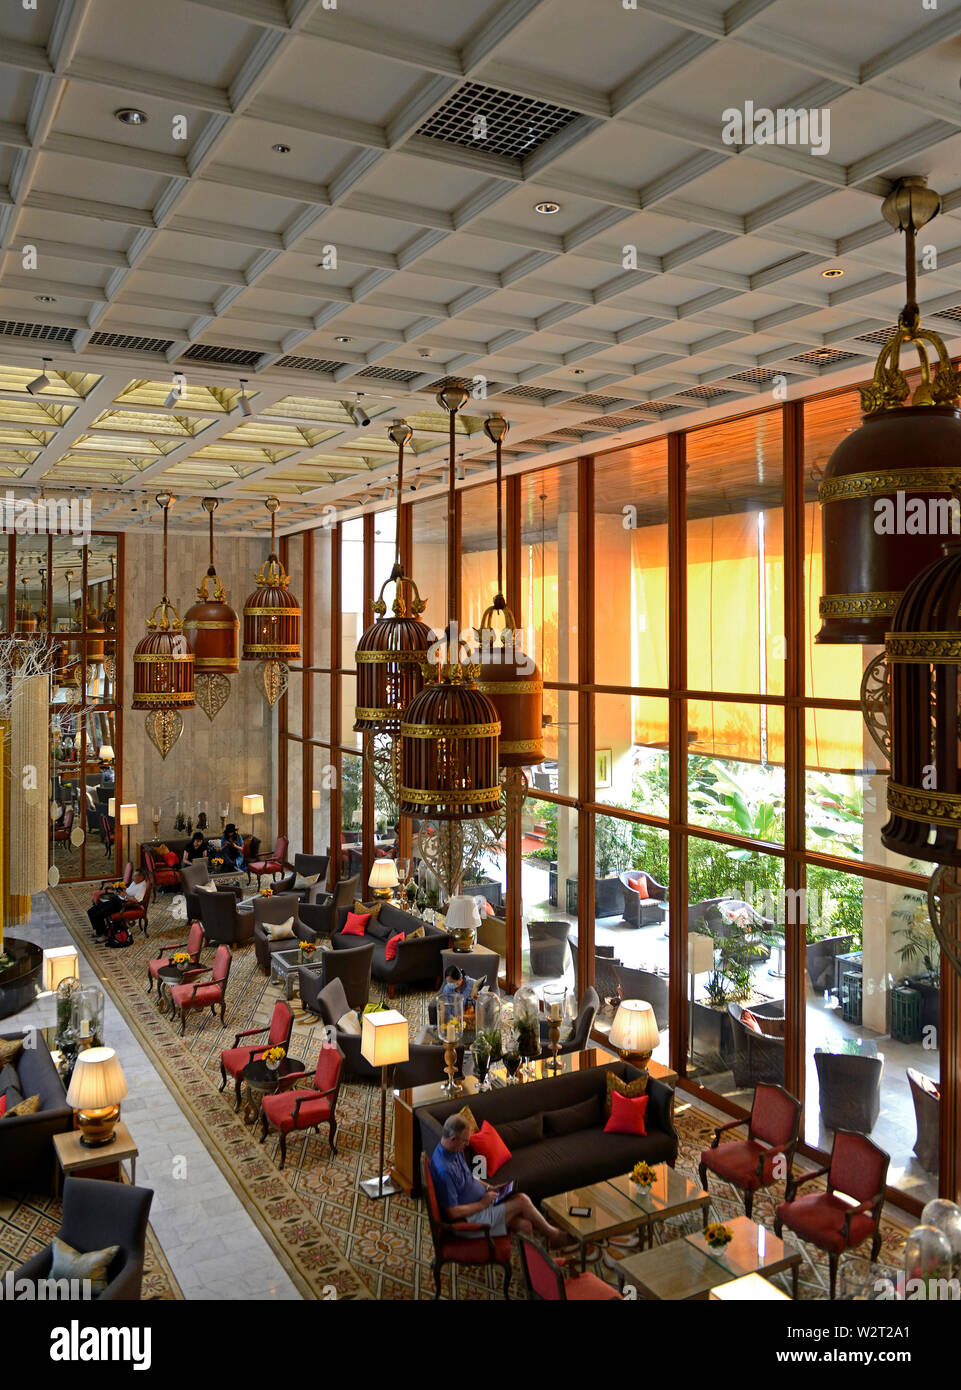 bangkok, thailand - february 02, 2019:   lobby of the mandarin oriental hotel Stock Photo